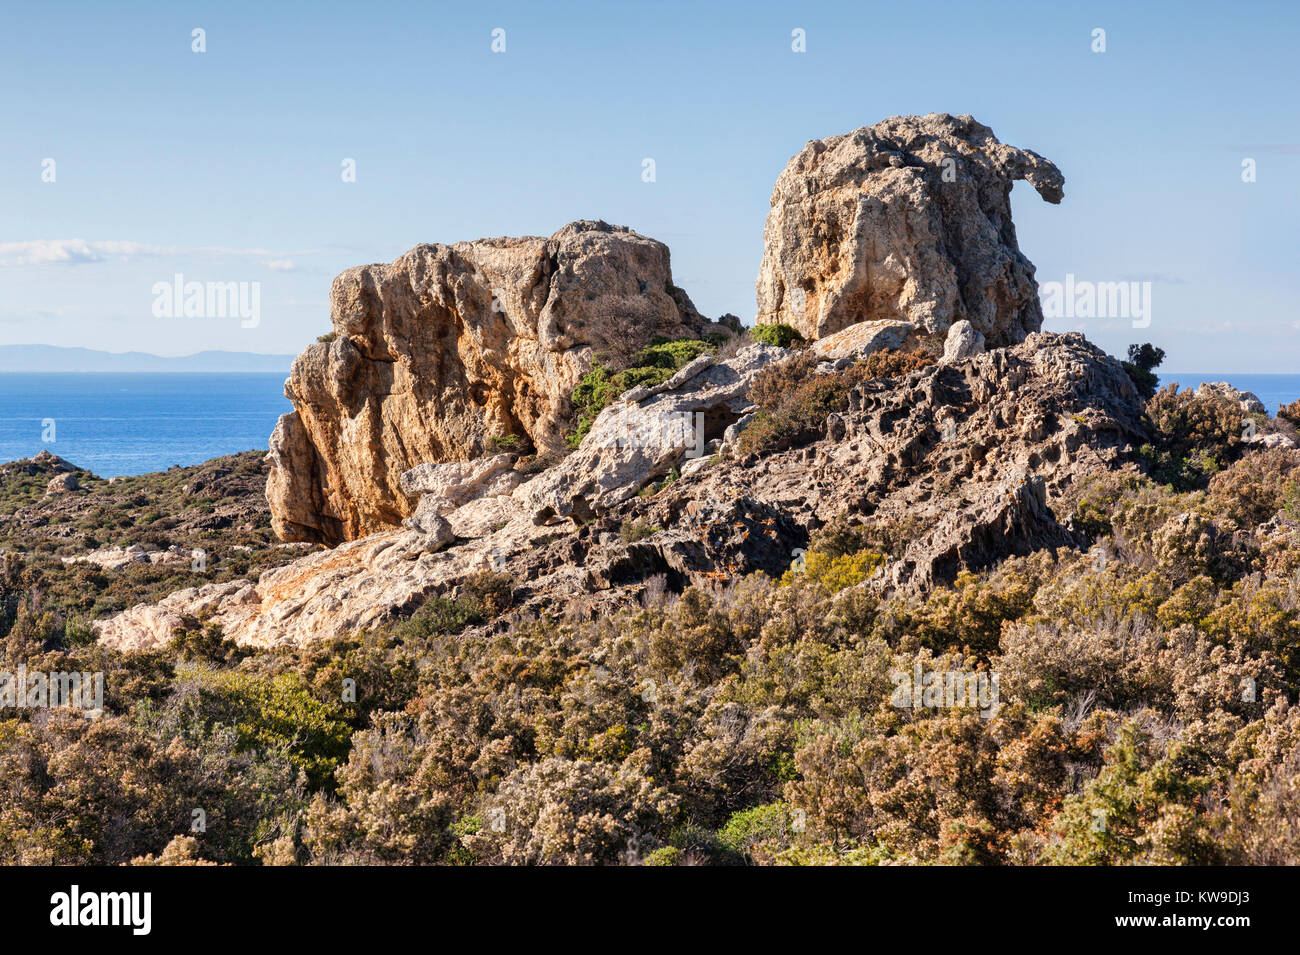 Una delle formazioni rocciose che ha ispirato l'artista Salvador Dali, Cap de Creus, Catalogna, Spagna Foto Stock